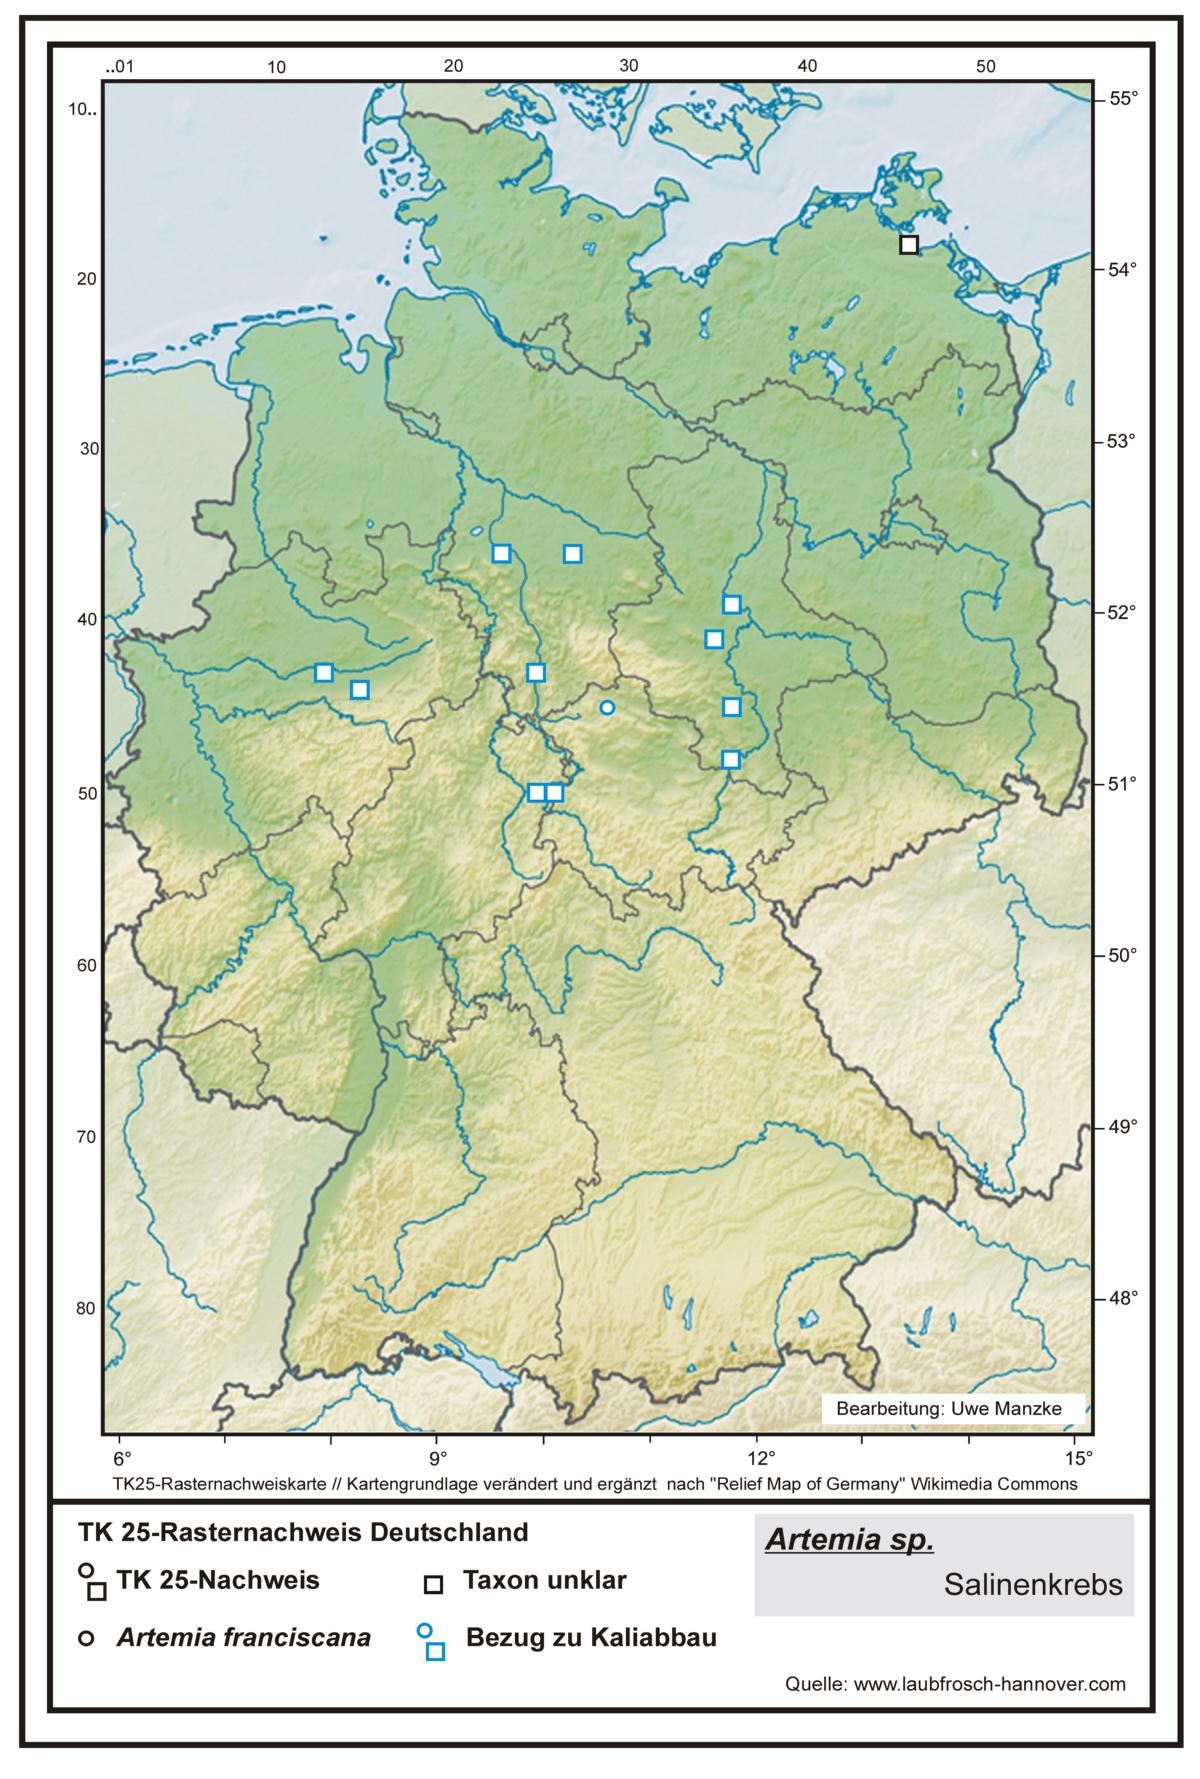 Artemia TK25-Rasternachweiskarte Deutschland, Bearbeitung Uwe Manzke; Kartengrundlage: verändert n. Relief Map of Germany Wikimedia Commons https://commons.wikimedia.org/wiki/File:Relief_Map_of_Germany.svg